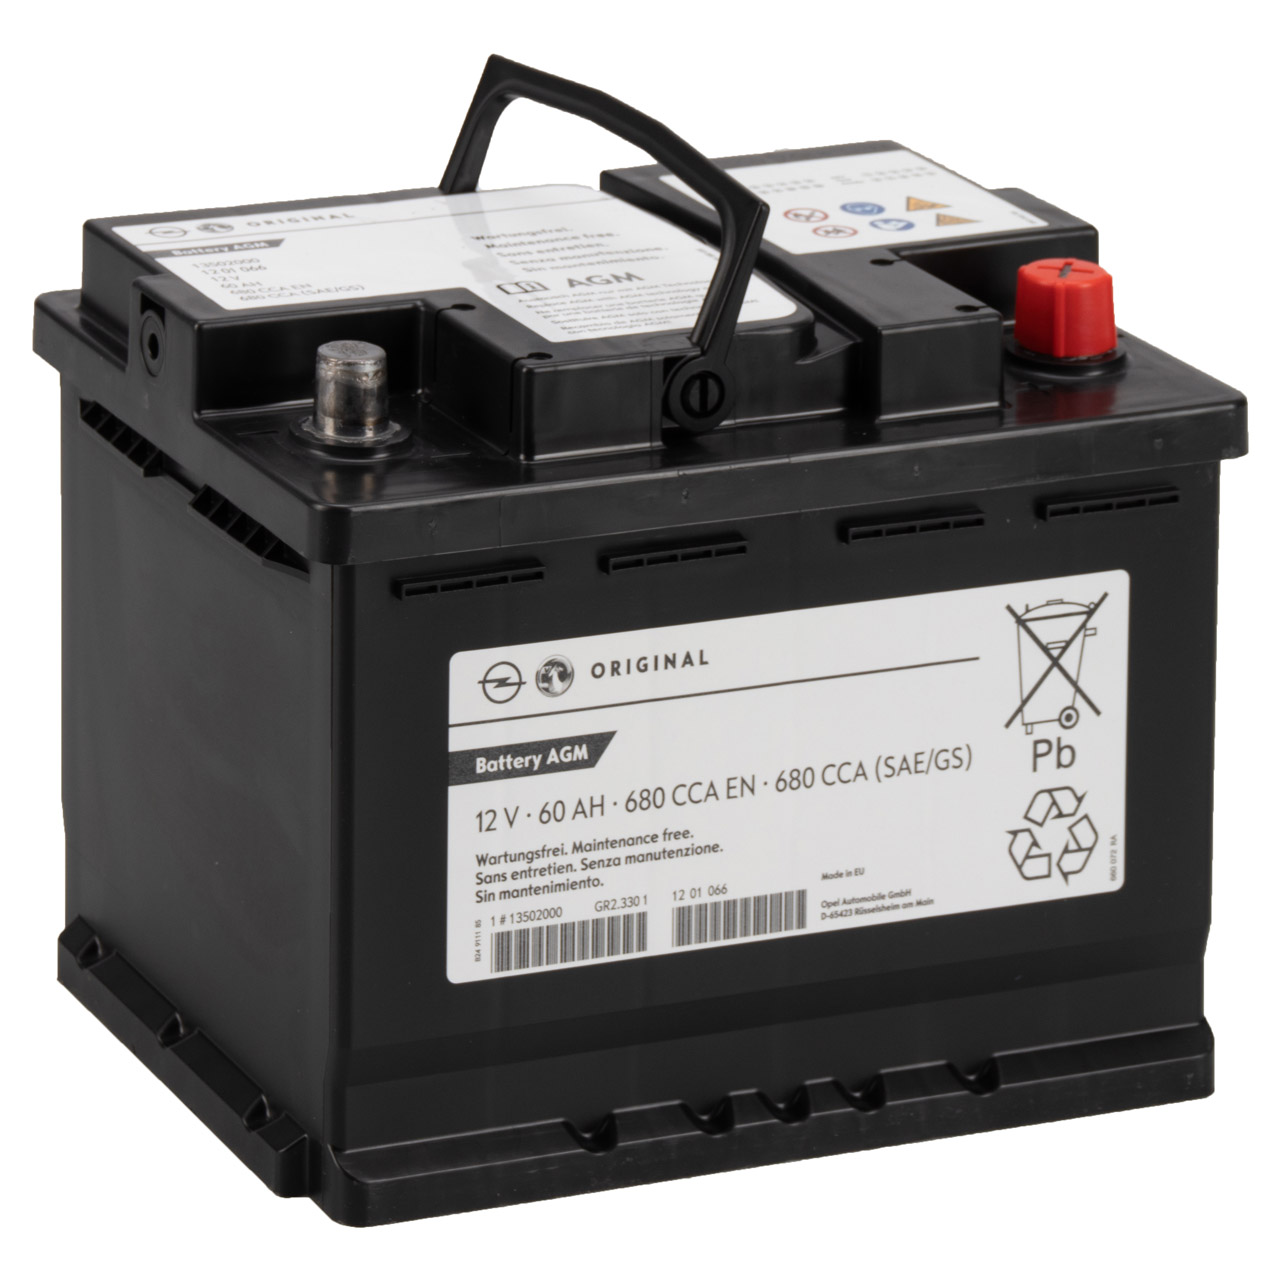 Autobatterie 12V 60Ah 540A EN Speed starter Batterie ersetzt 55 56 62 65 Ah